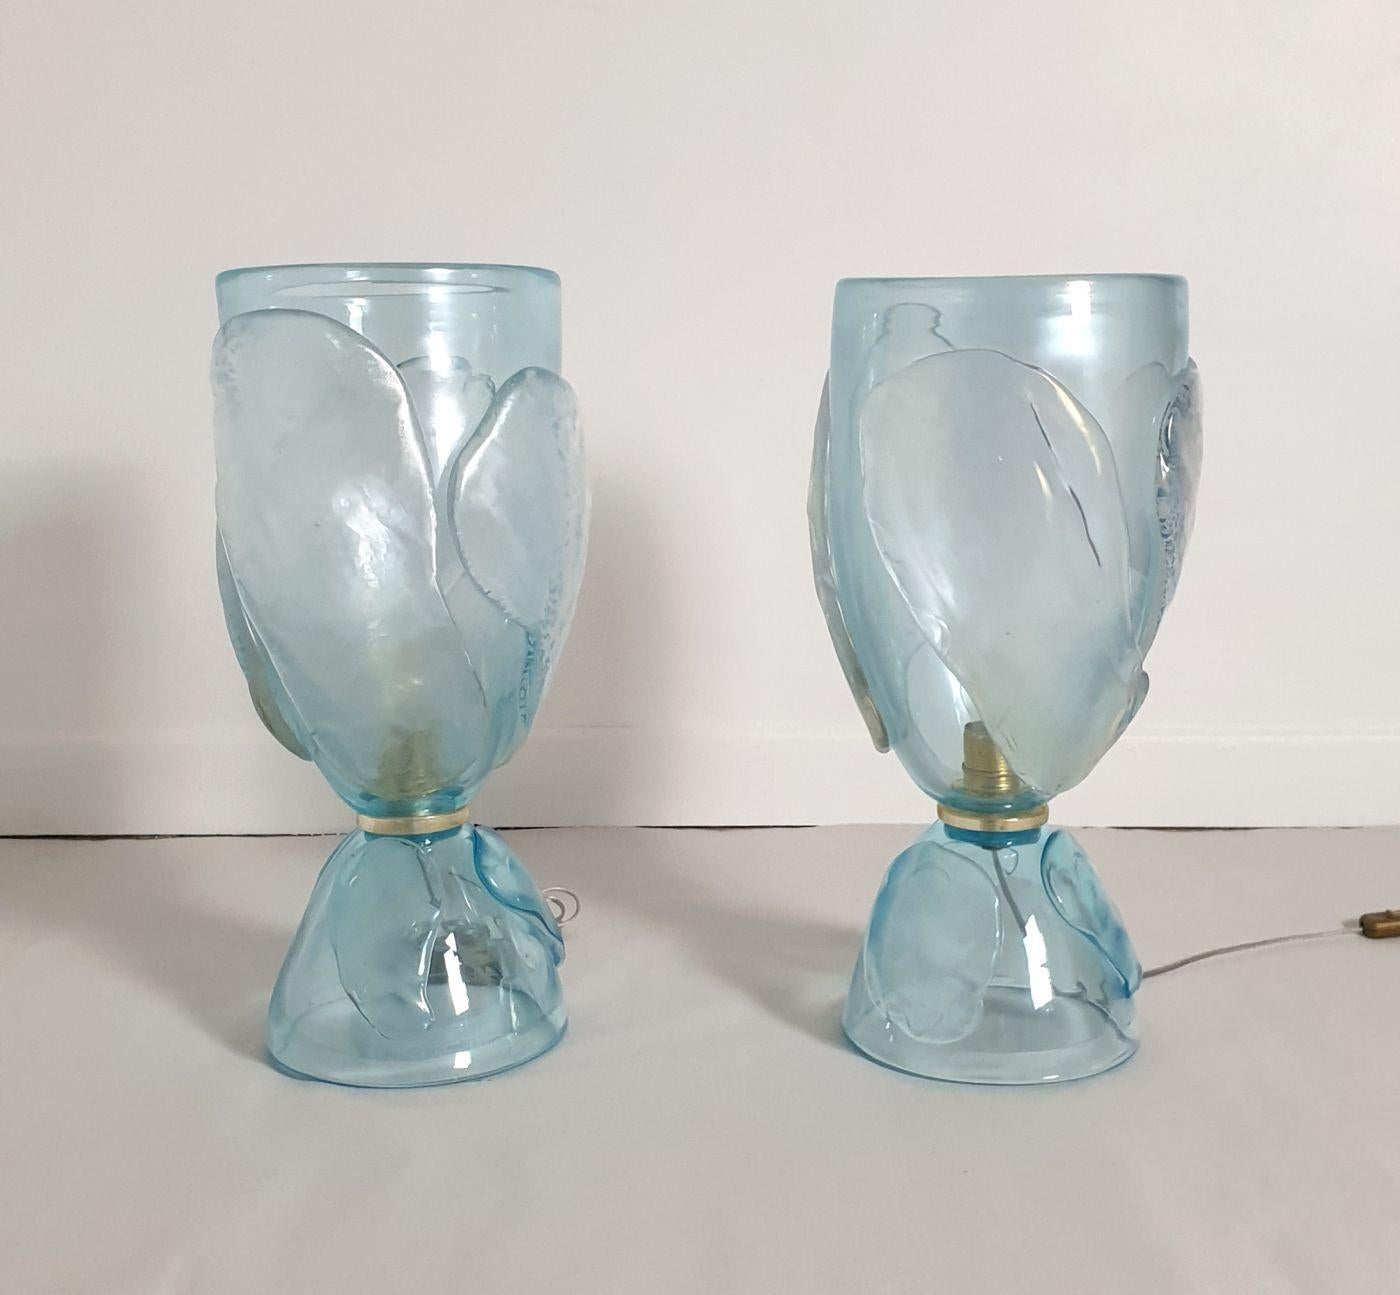 Paar große himmelblaue Murano-Glaslampen aus der Mitte des Jahrhunderts, Italien 1970, zugeschrieben Seguso.
Das Paar Vintage-Lampen ist aus dickem und schwerem Murano-Glas handgefertigt.
Das Glas hat eine transparente himmelblaue Farbe und wird